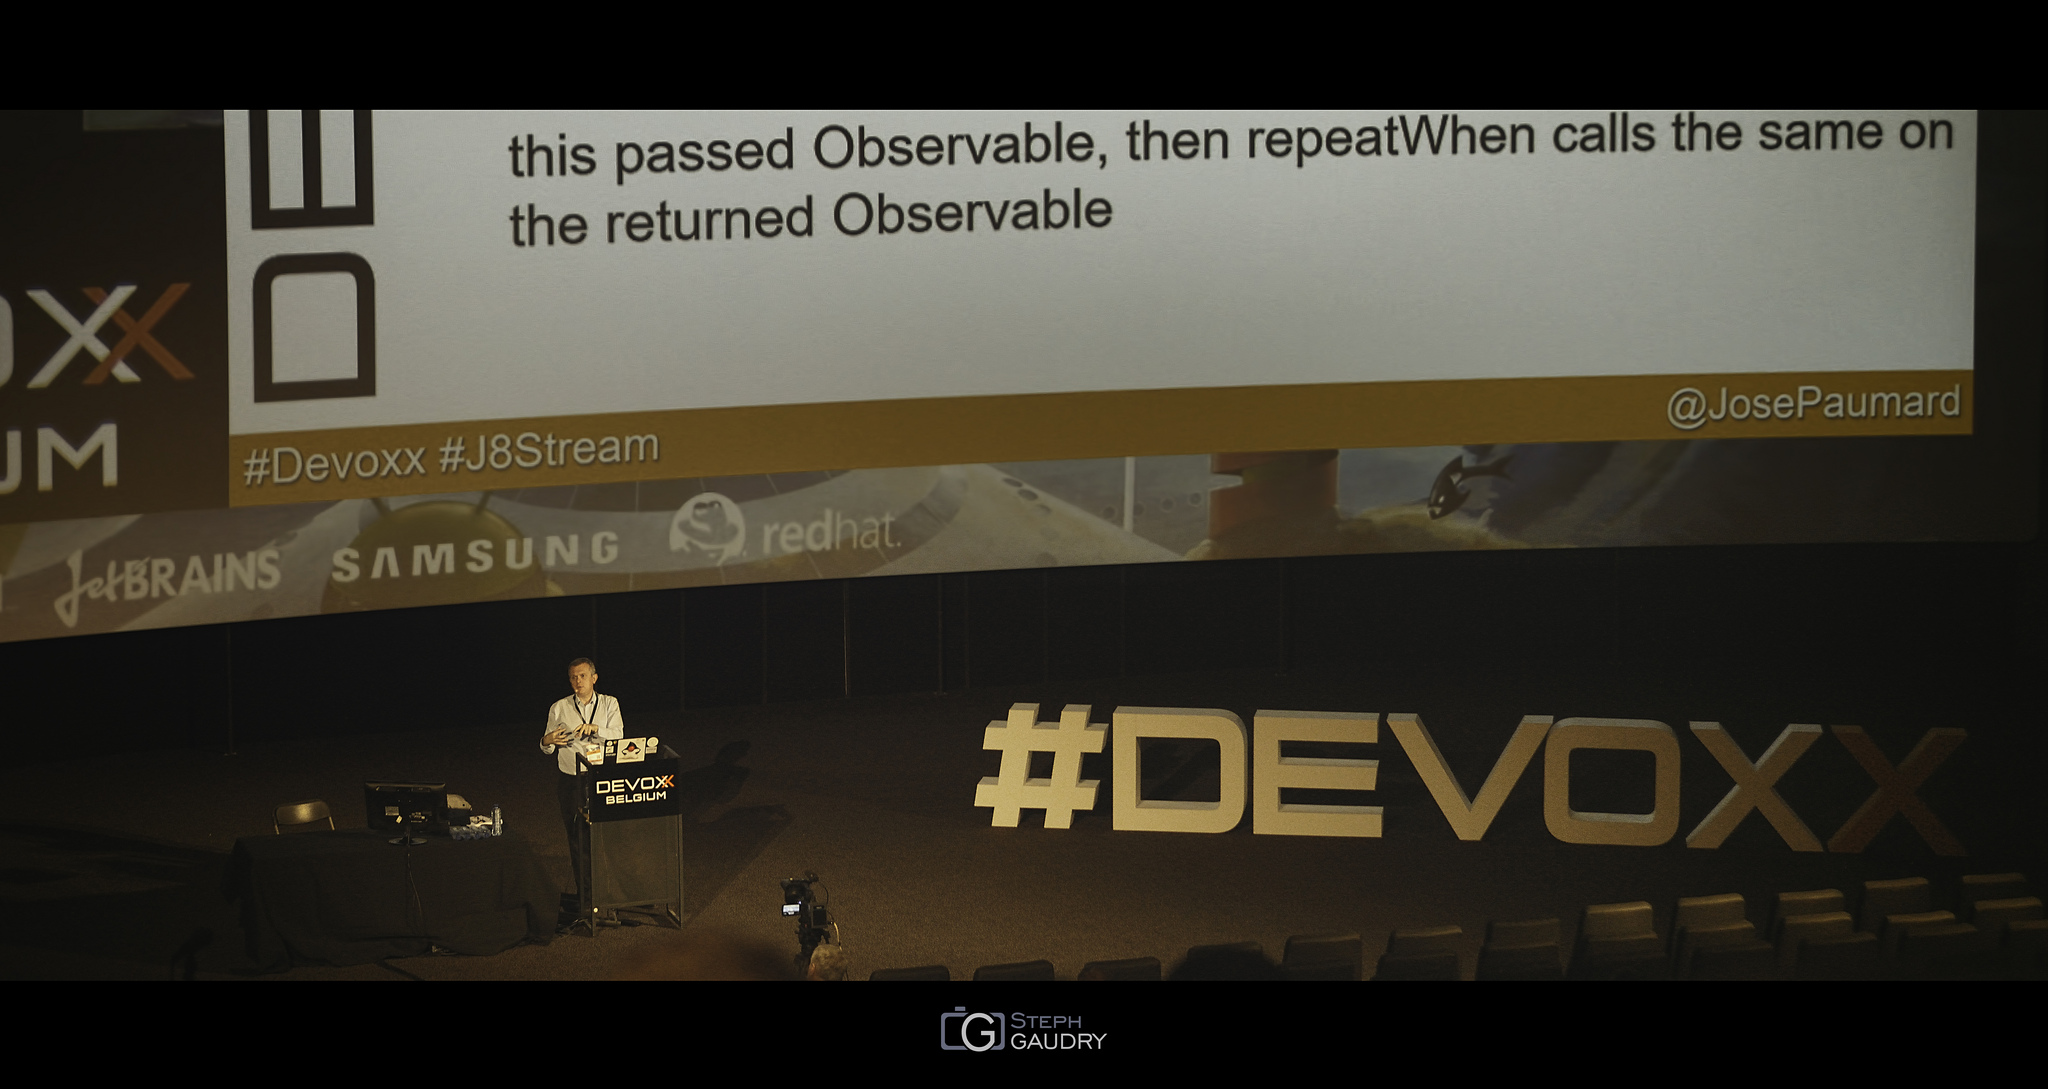 Devoxx2015 - Java 8 Stream and RxJava [Klicken Sie hier, um die Diashow zu starten]